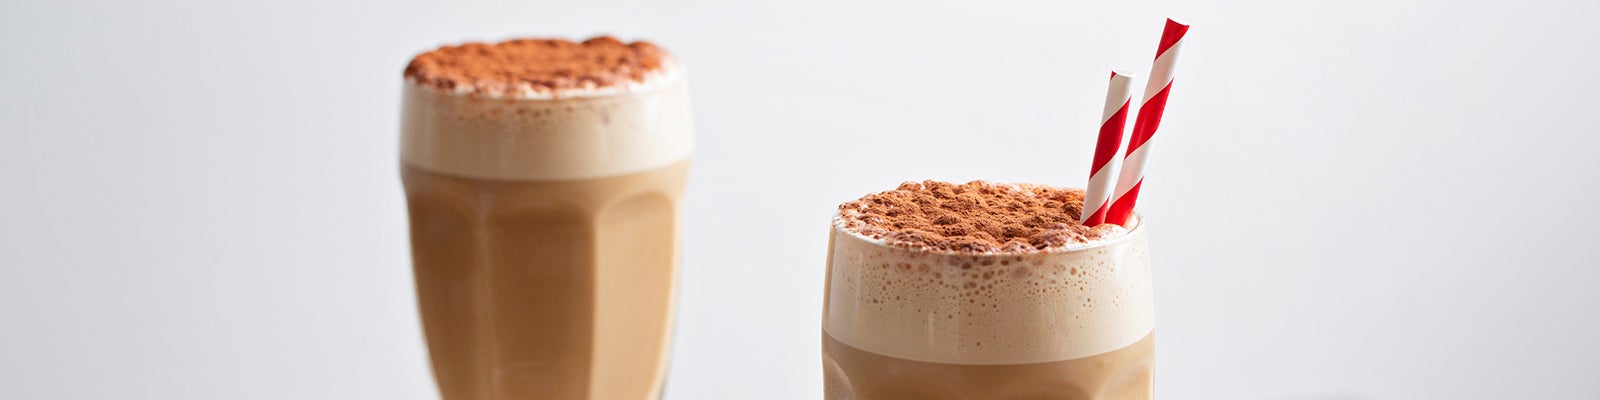 cappuccino-milkshake-recipe-header-desktop